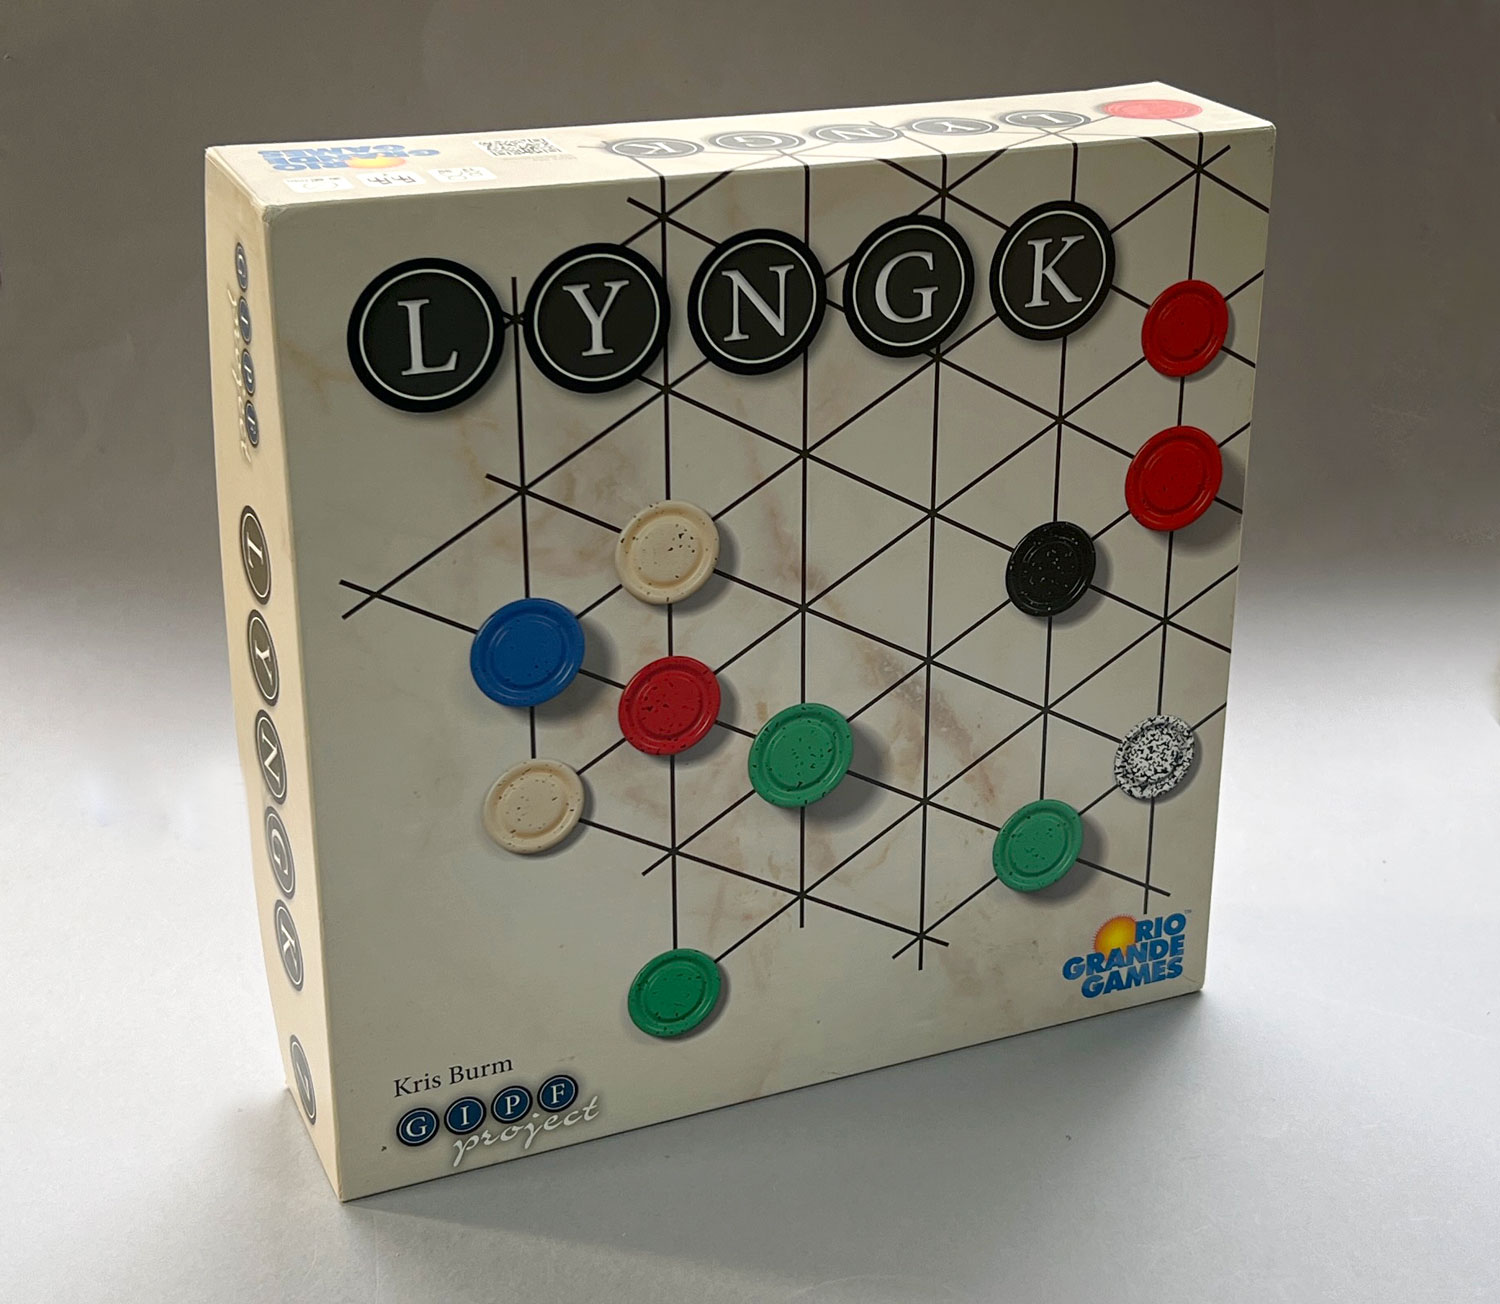 LYNGK: The Box